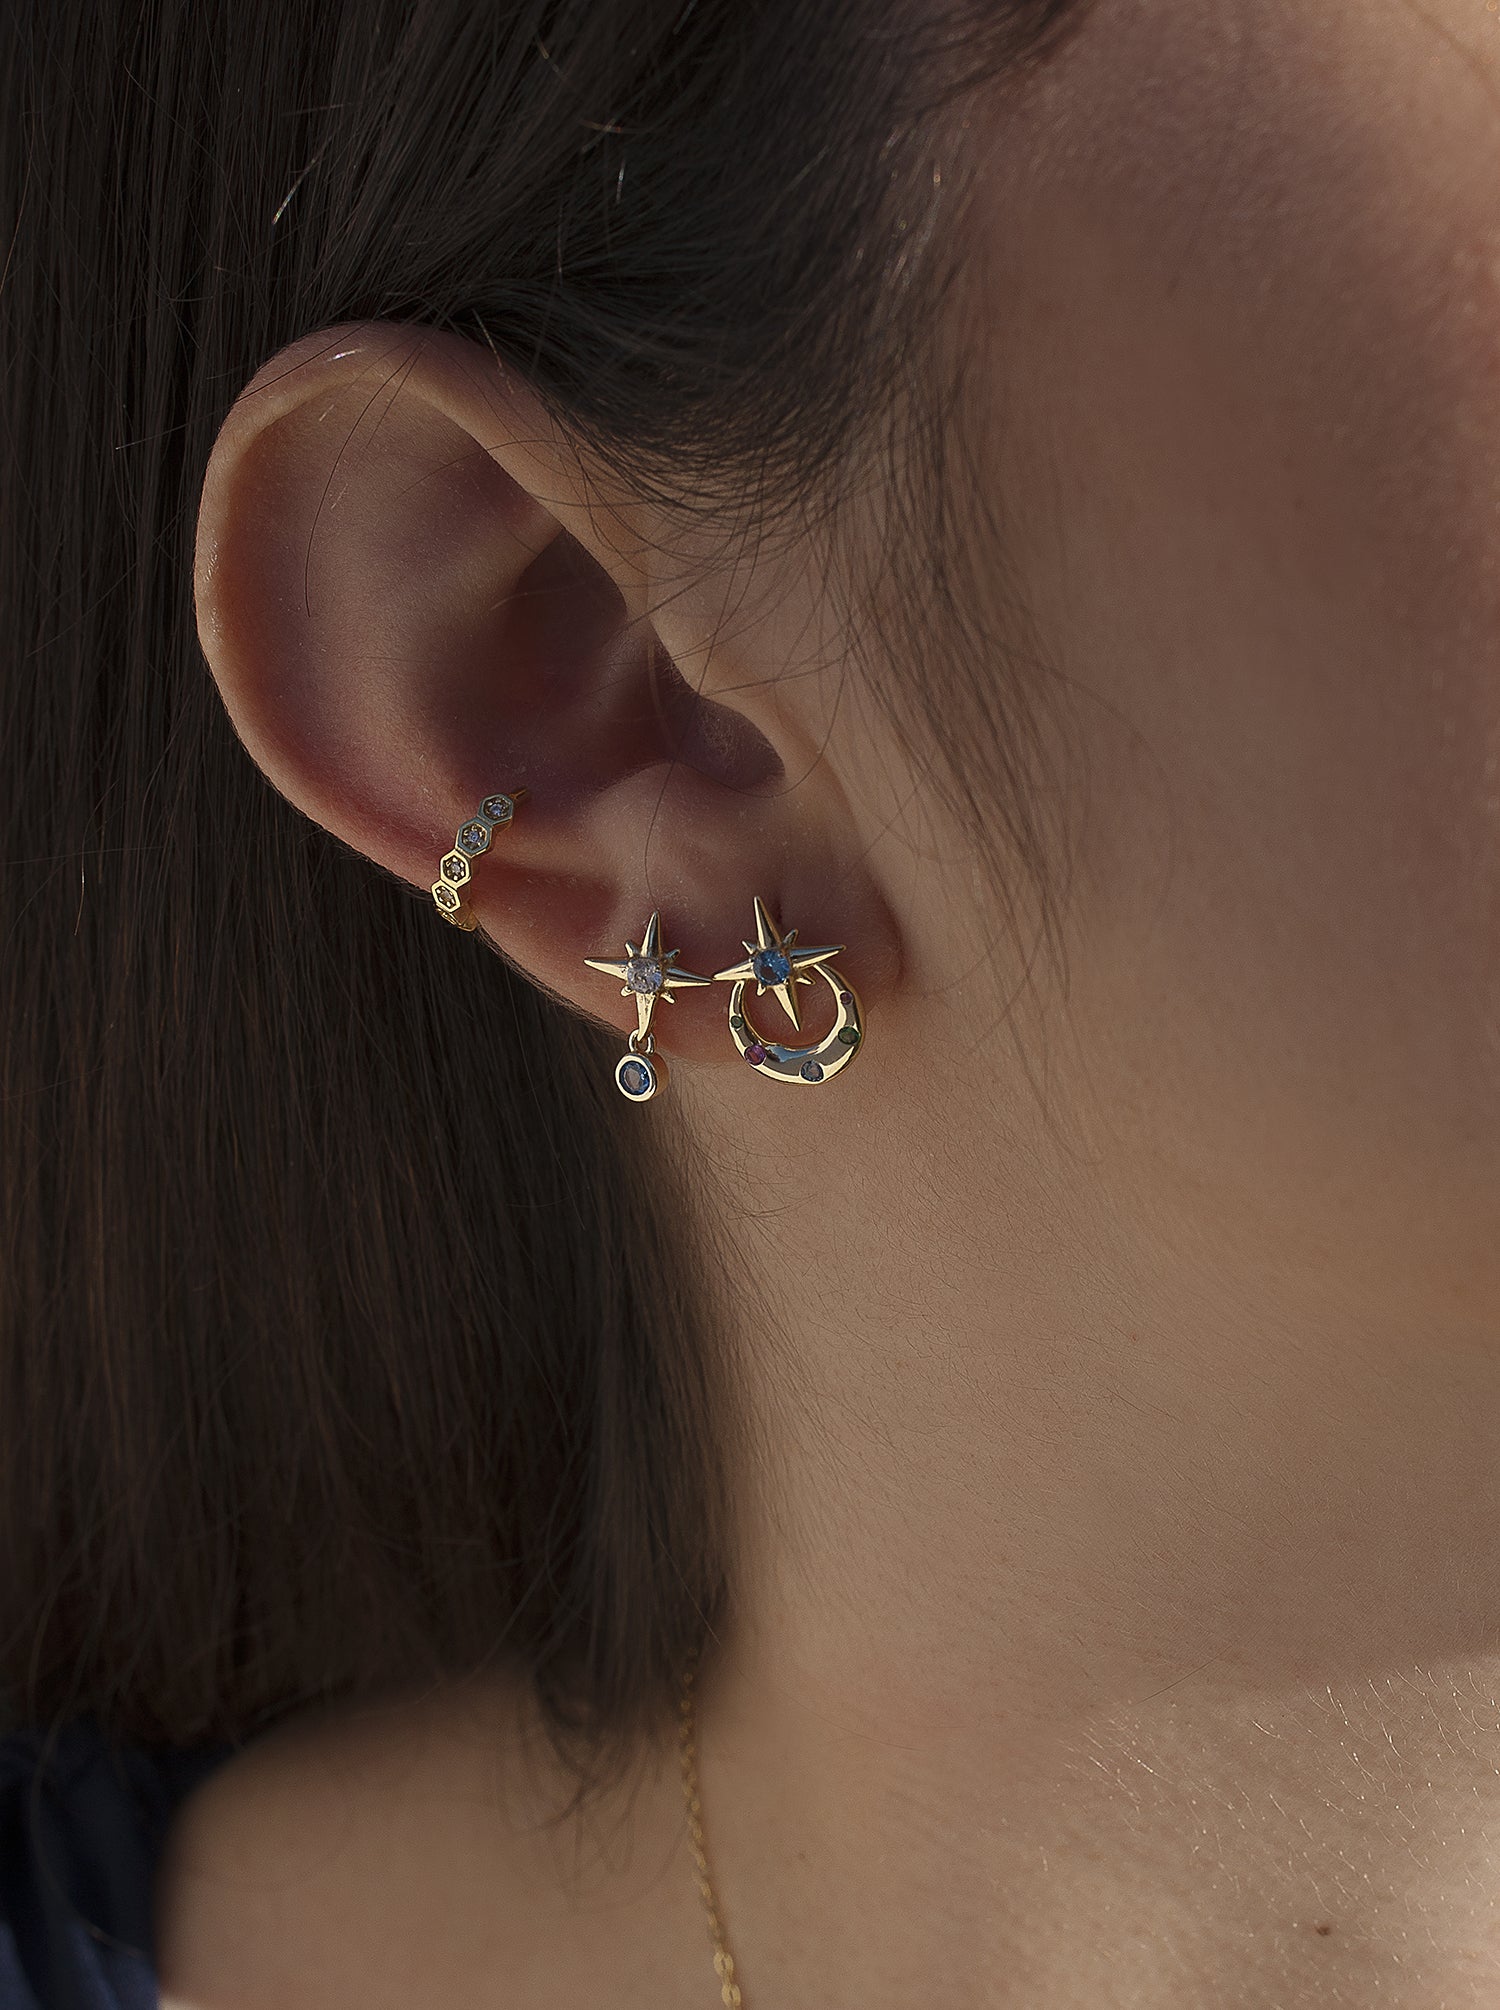 Ear cuff de plata bañada en oro diseño hexagonal